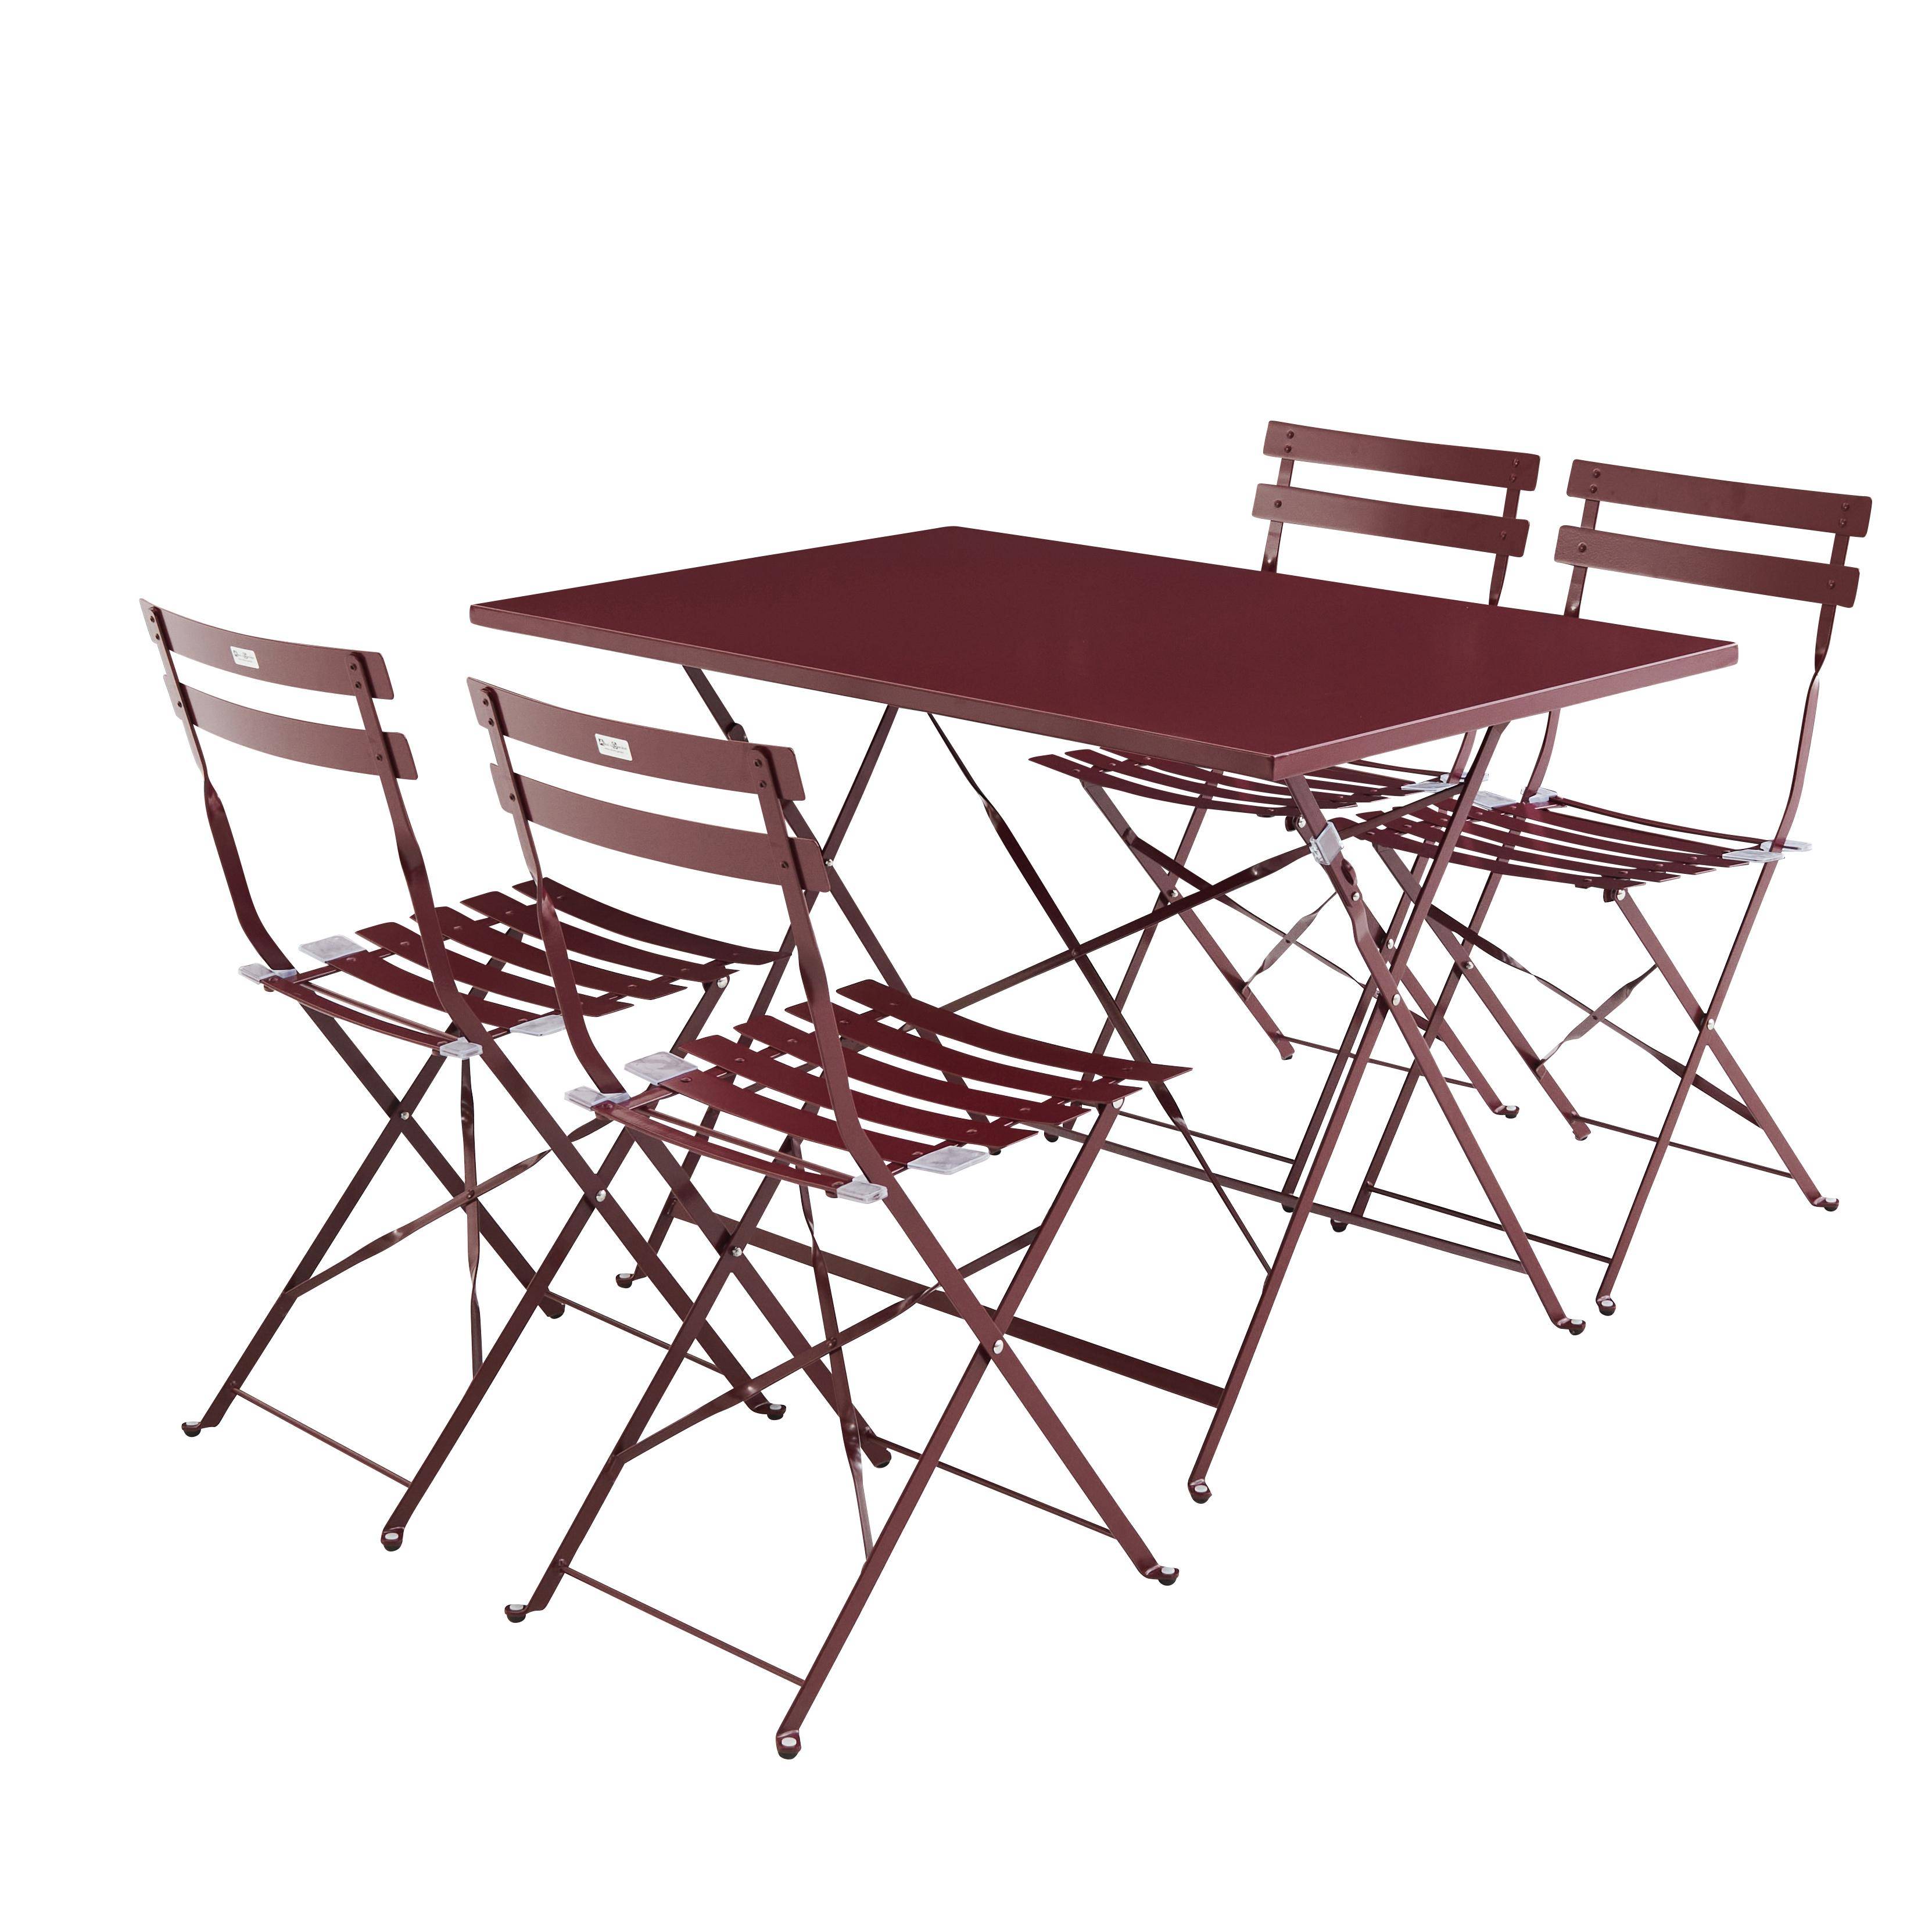 Tavolo da giardino, bar bistrot, pieghevole - modello: Emilia, rettangolare, colore: Bordeaux - Tavolo, dimensioni: 110x70cm, con quattro sedie pieghevoli, acciaio termolaccato Photo2